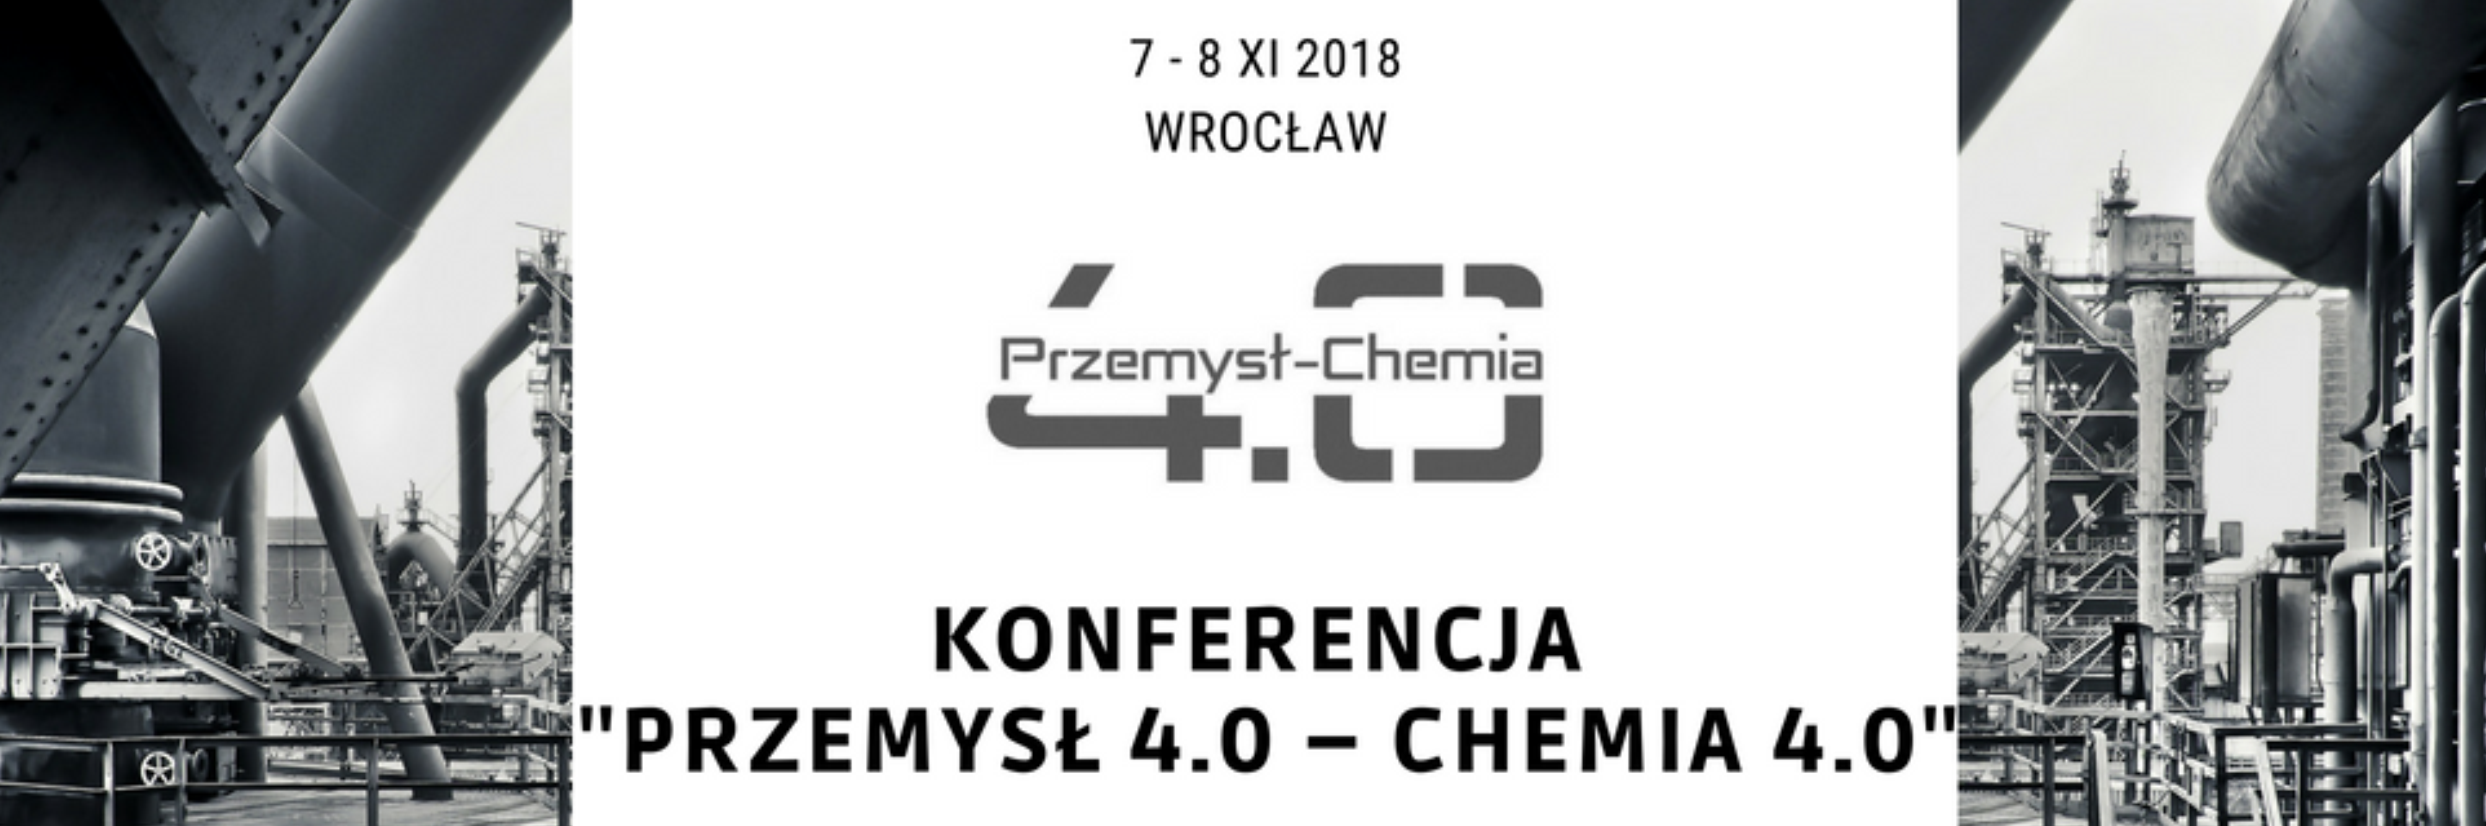 Konferencja "Przemysł 4.0 - Chemia 4.0"